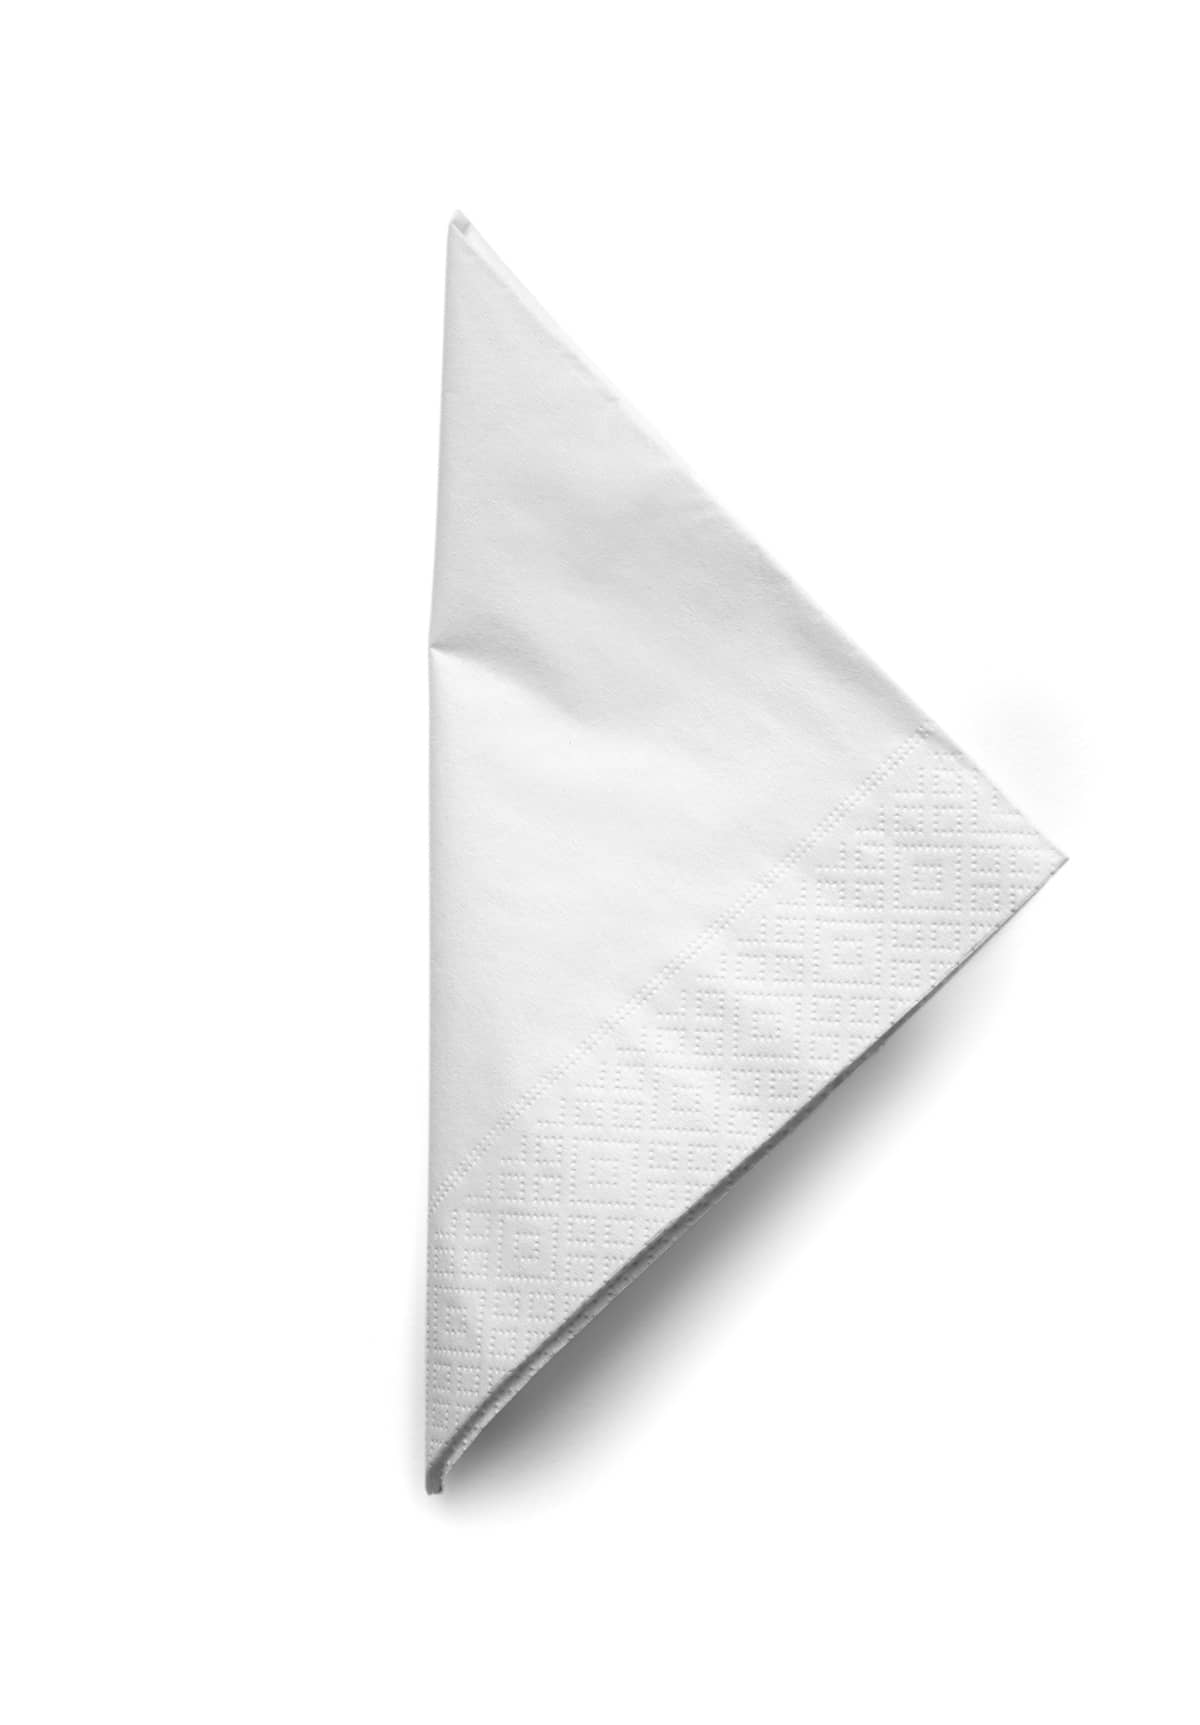 Folded cocktail napkin isolated on white background